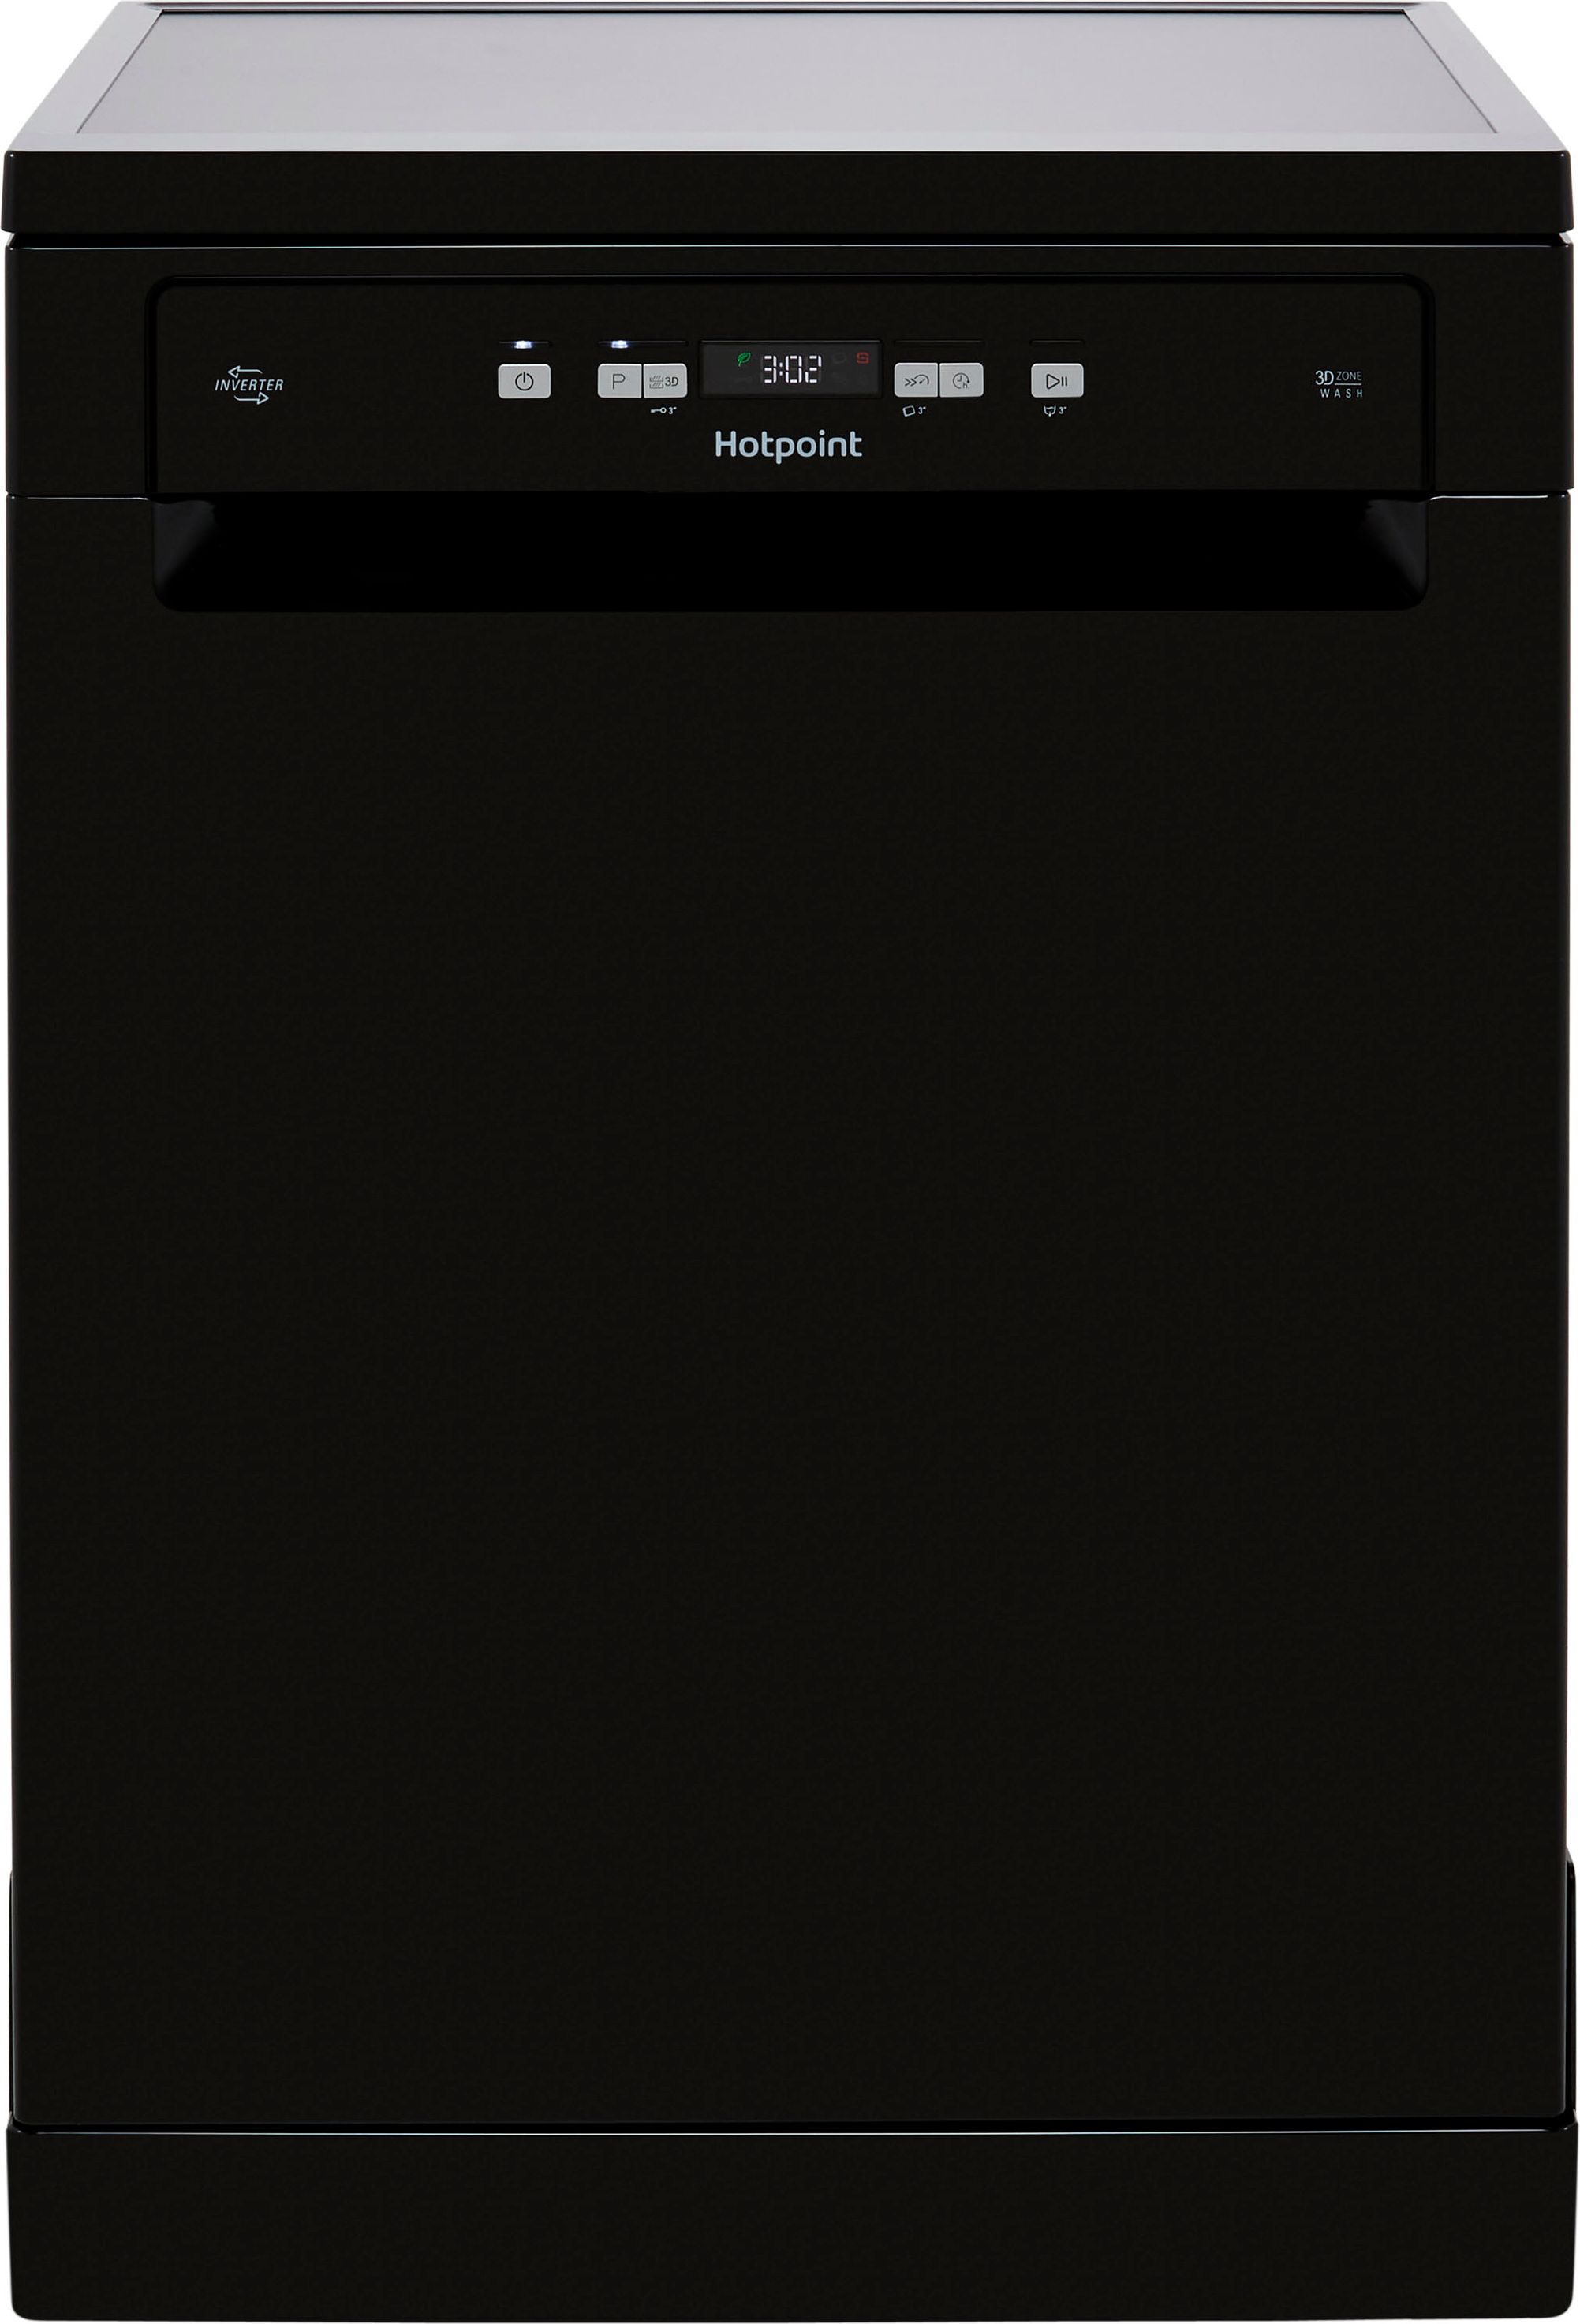 Hotpoint HFC3C26WCBUK Standard Dishwasher - Black - E Rated, Black